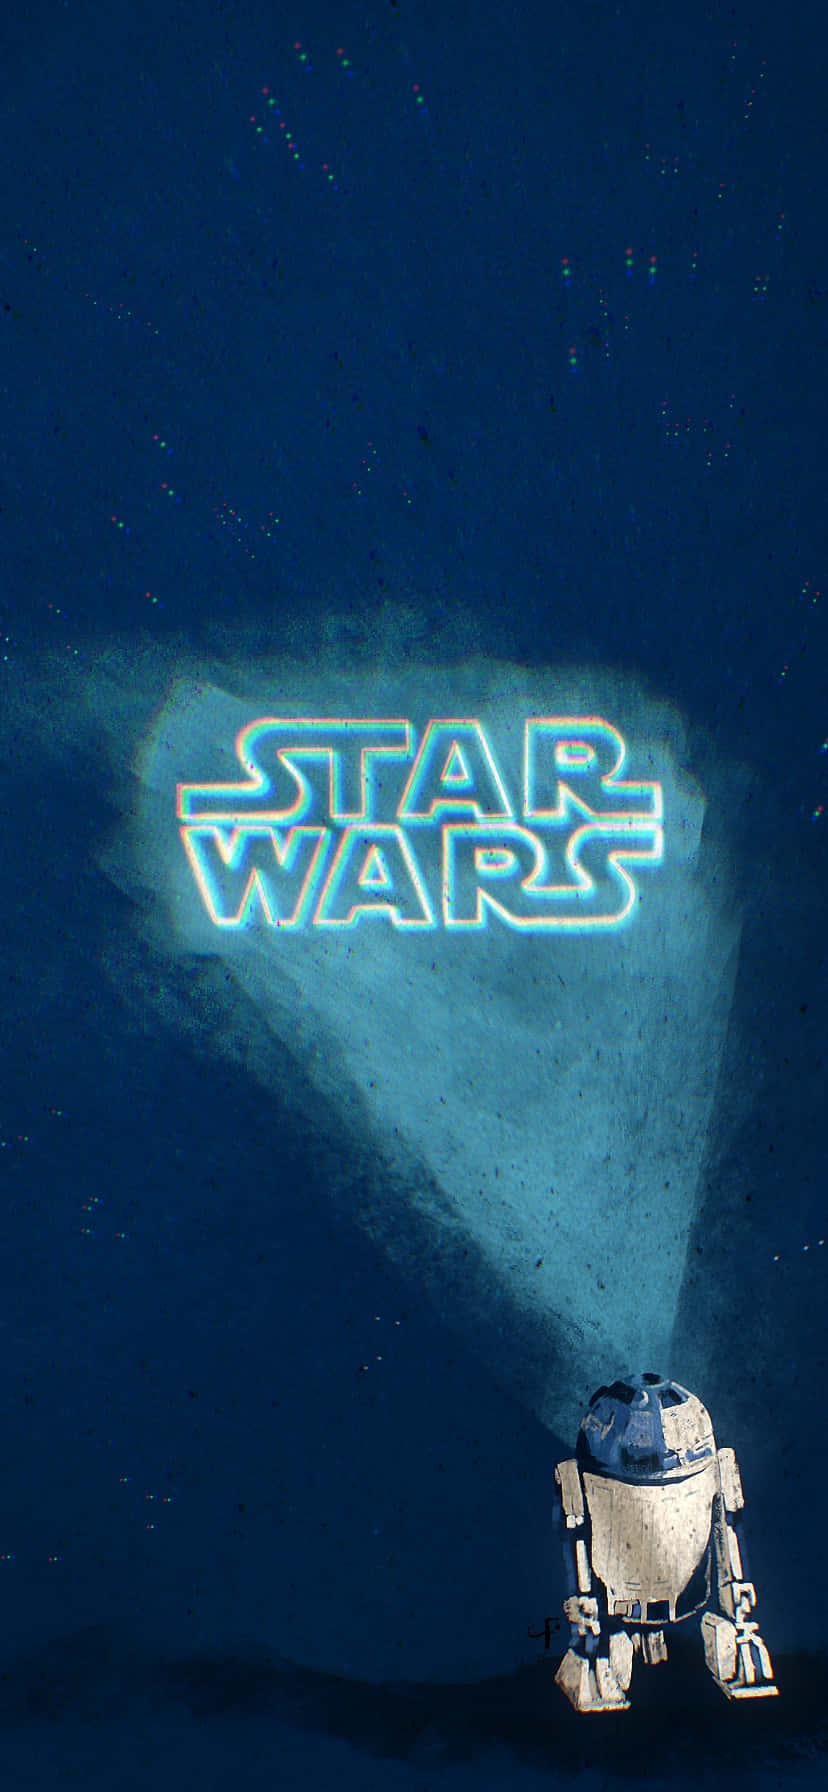 Star Wars R2 D2 Under Spotlight Wallpaper